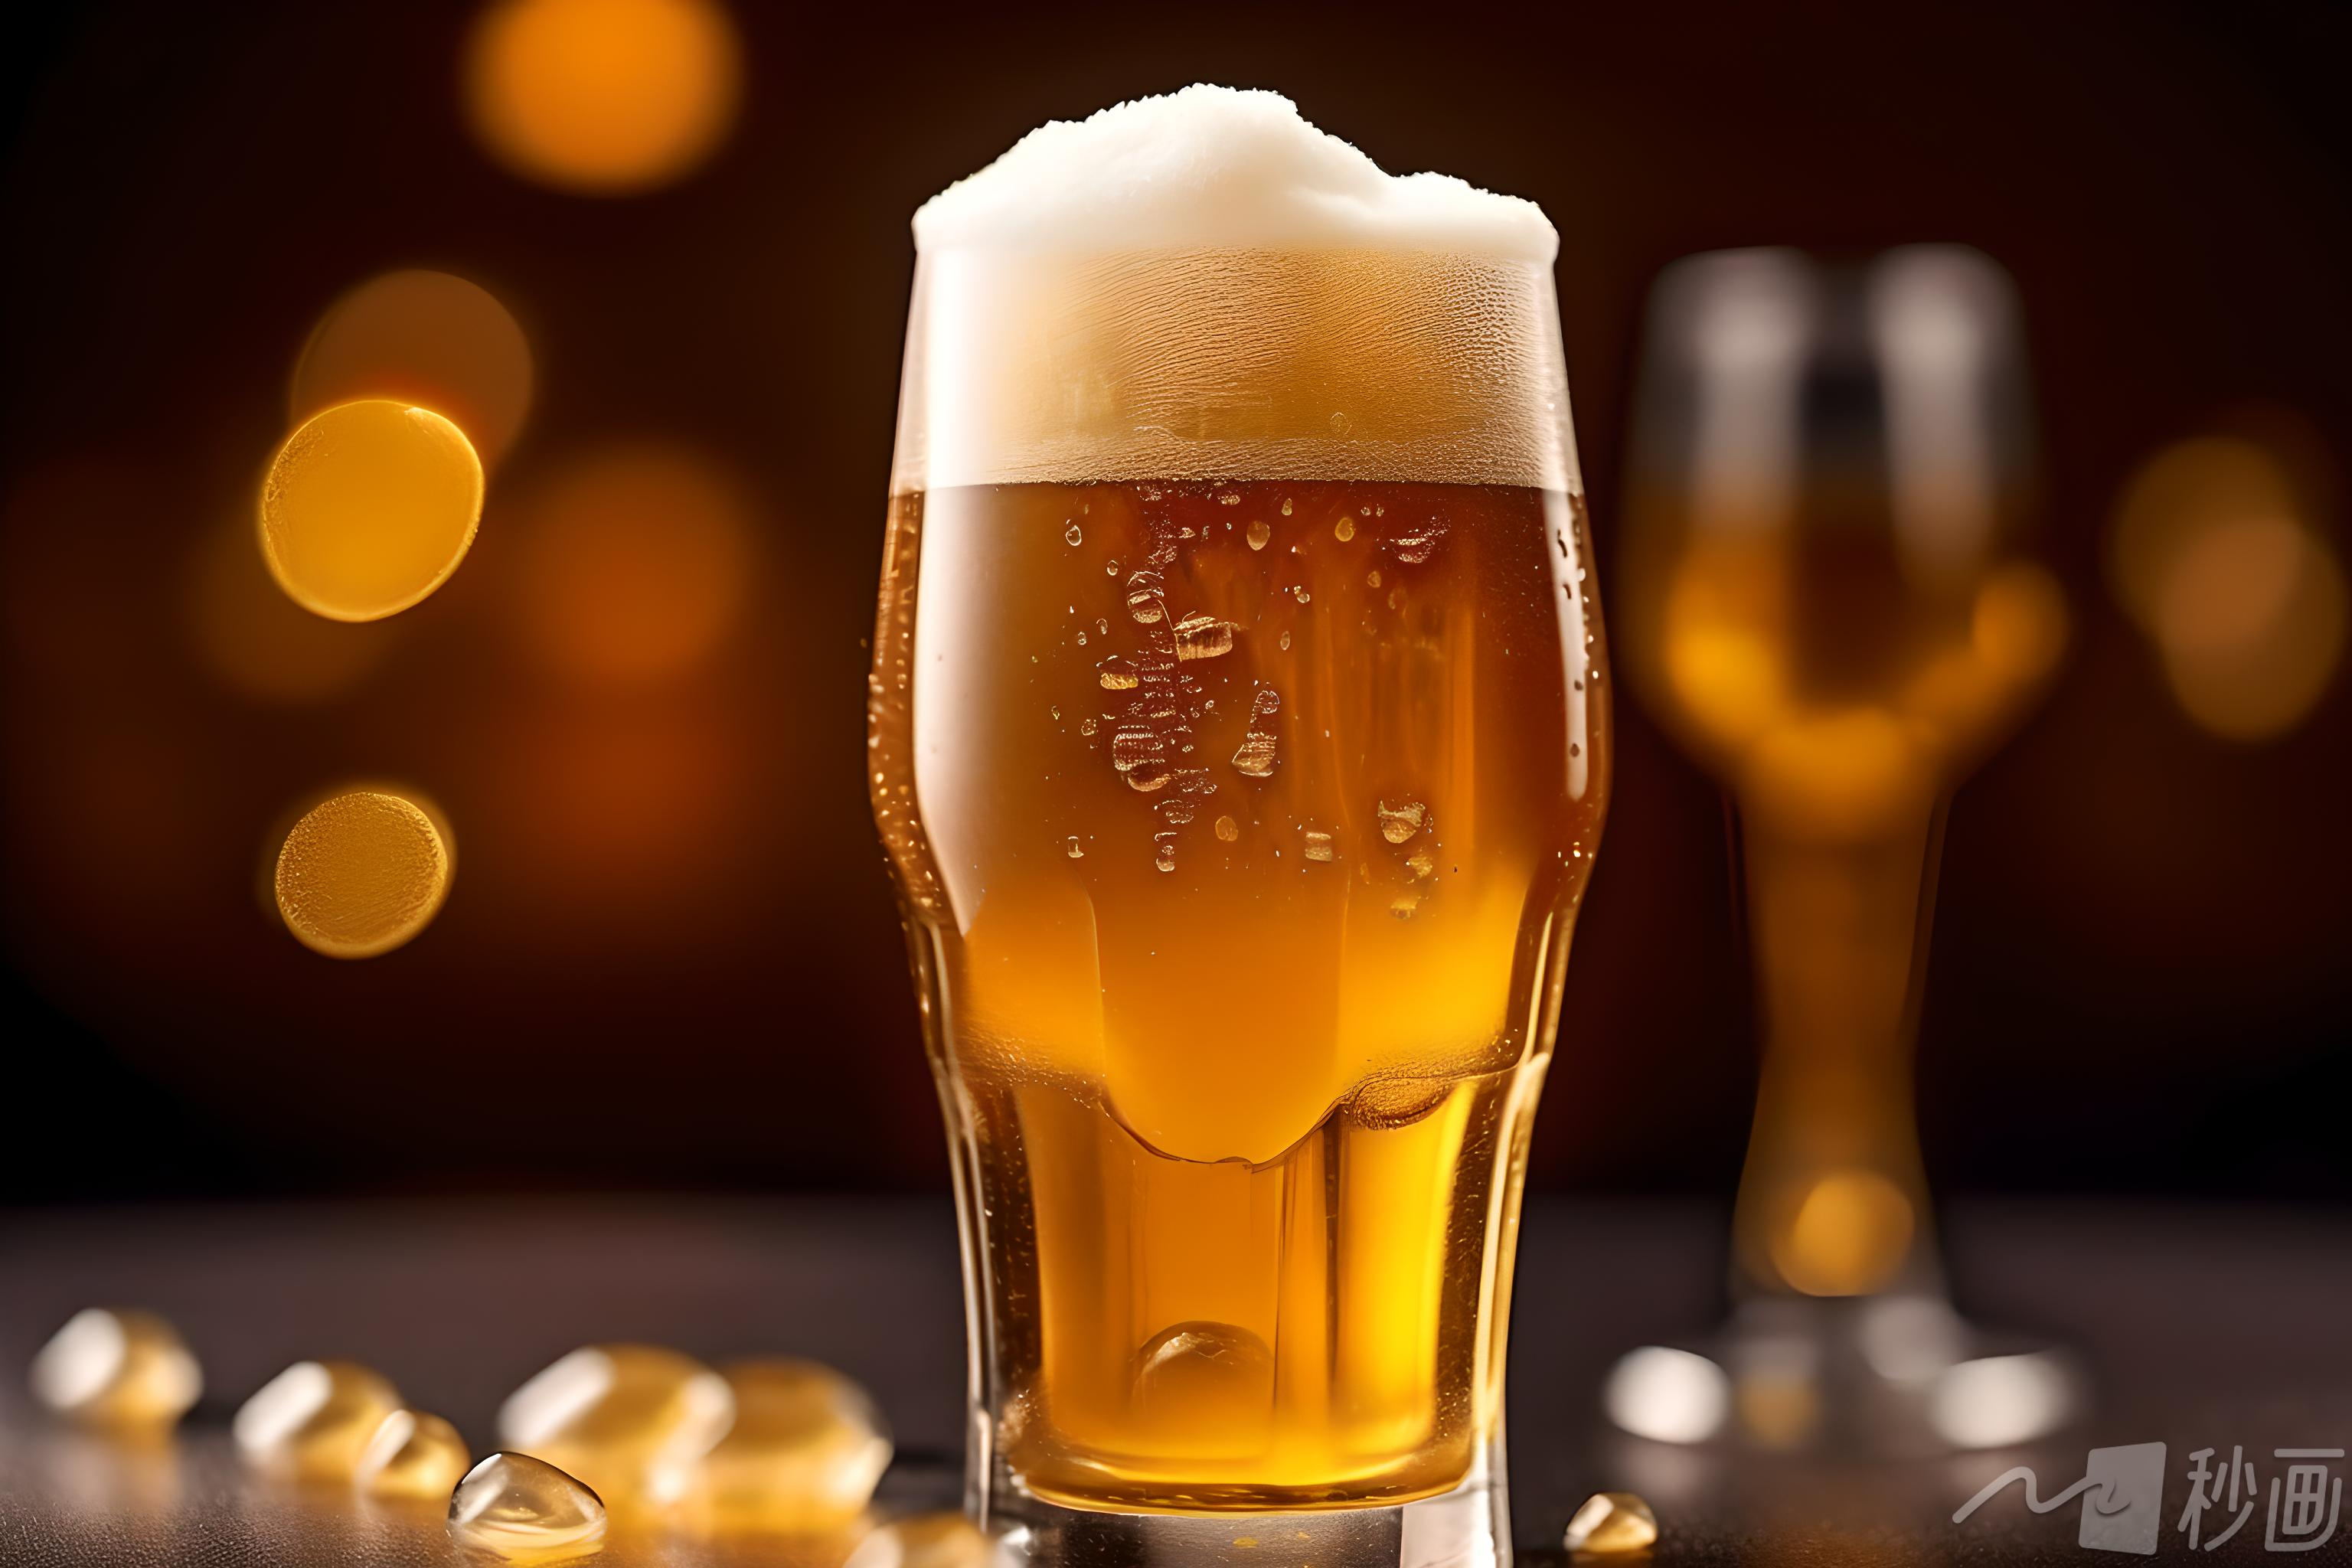 重庆啤酒被子公司告上法庭 本地品牌和外资股东激烈博弈